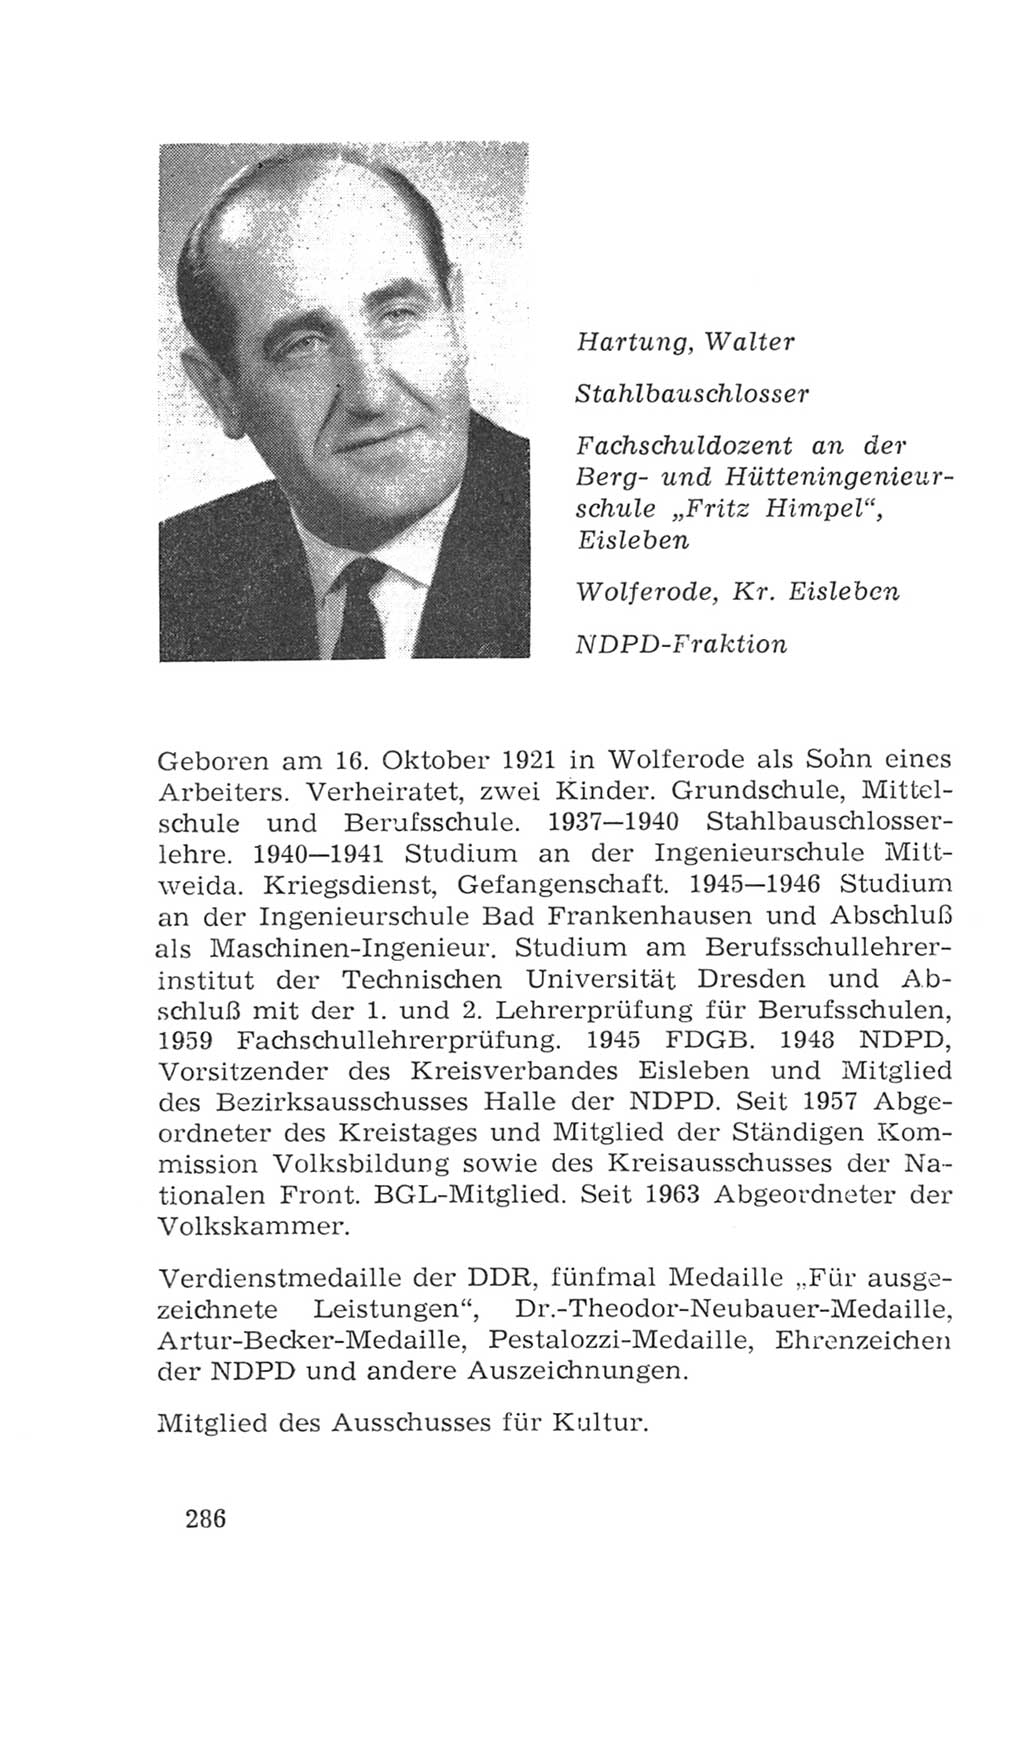 Volkskammer (VK) der Deutschen Demokratischen Republik (DDR), 4. Wahlperiode 1963-1967, Seite 286 (VK. DDR 4. WP. 1963-1967, S. 286)